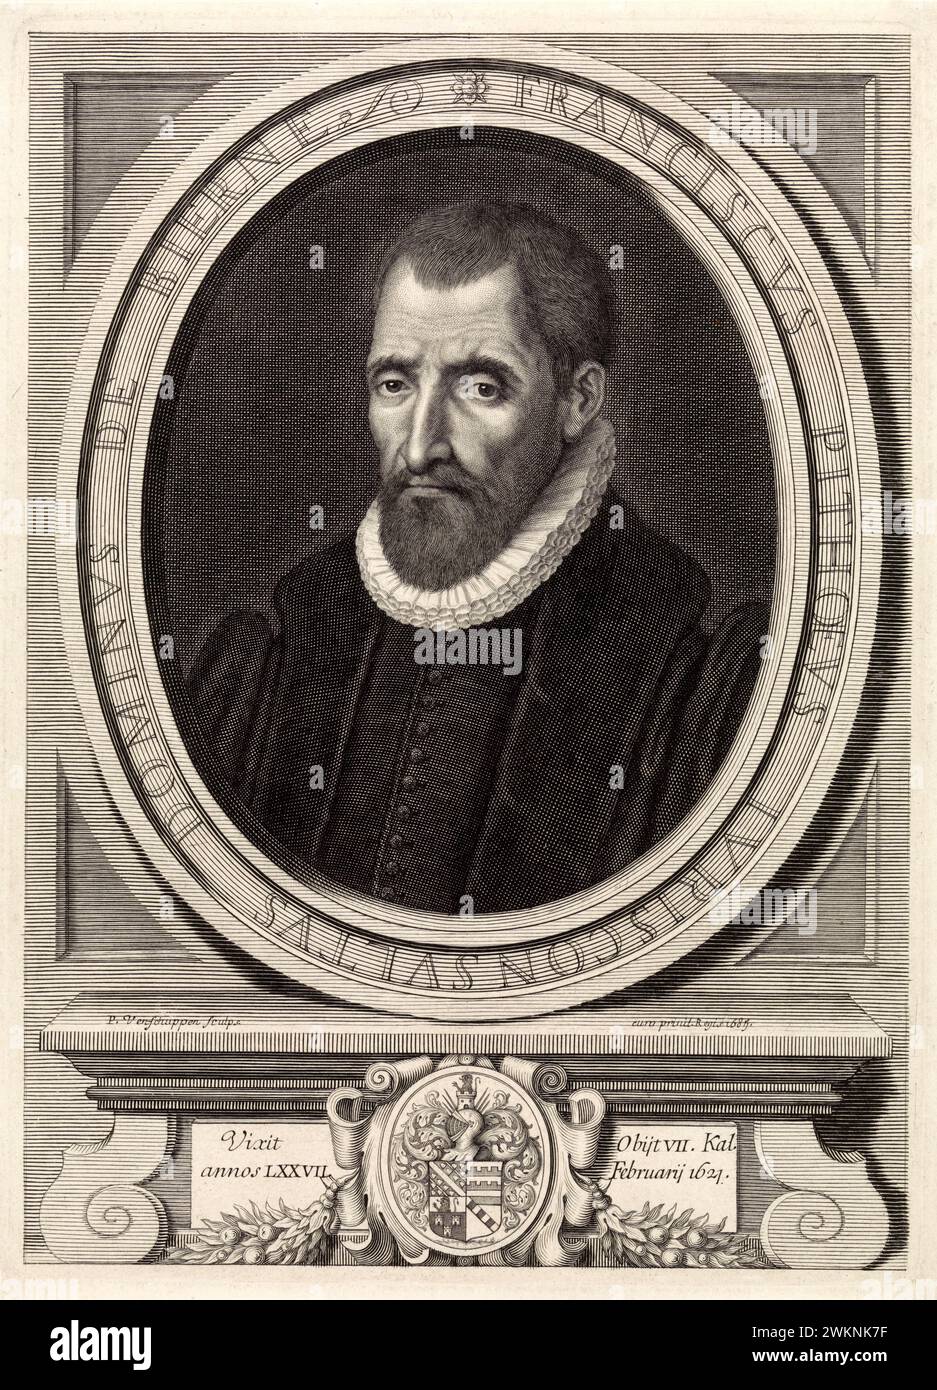 1585 c. , FRANKREICH : der italienische Jurist, Historiker und Schriftsteller Francois PITHOU ( 1543–1621), junger Mann von Pierre Pithou ( 1543–1596 ). Porträt von Pieter van Schuppen , veröffentlicht 1685 in Paris . - GESCHICHTE - FOTO STORICHE - HISTORIAN - STORICO - SCRITTORE - WRITER - LETTERATURA - LITERATUR - giureconsulto - GIURISTA - LEGGE - LAY - nobili - nobiltà francese - französischer Adel - FRANCIA - INCISIONE - GRAVUR - ILLUSTRATION - ILLUSTRAZIONE - Kragen - Collare - Colletto - GORGIERA - pizzo - Spitze - Bart - barba -- Archivio GBB Stockfoto